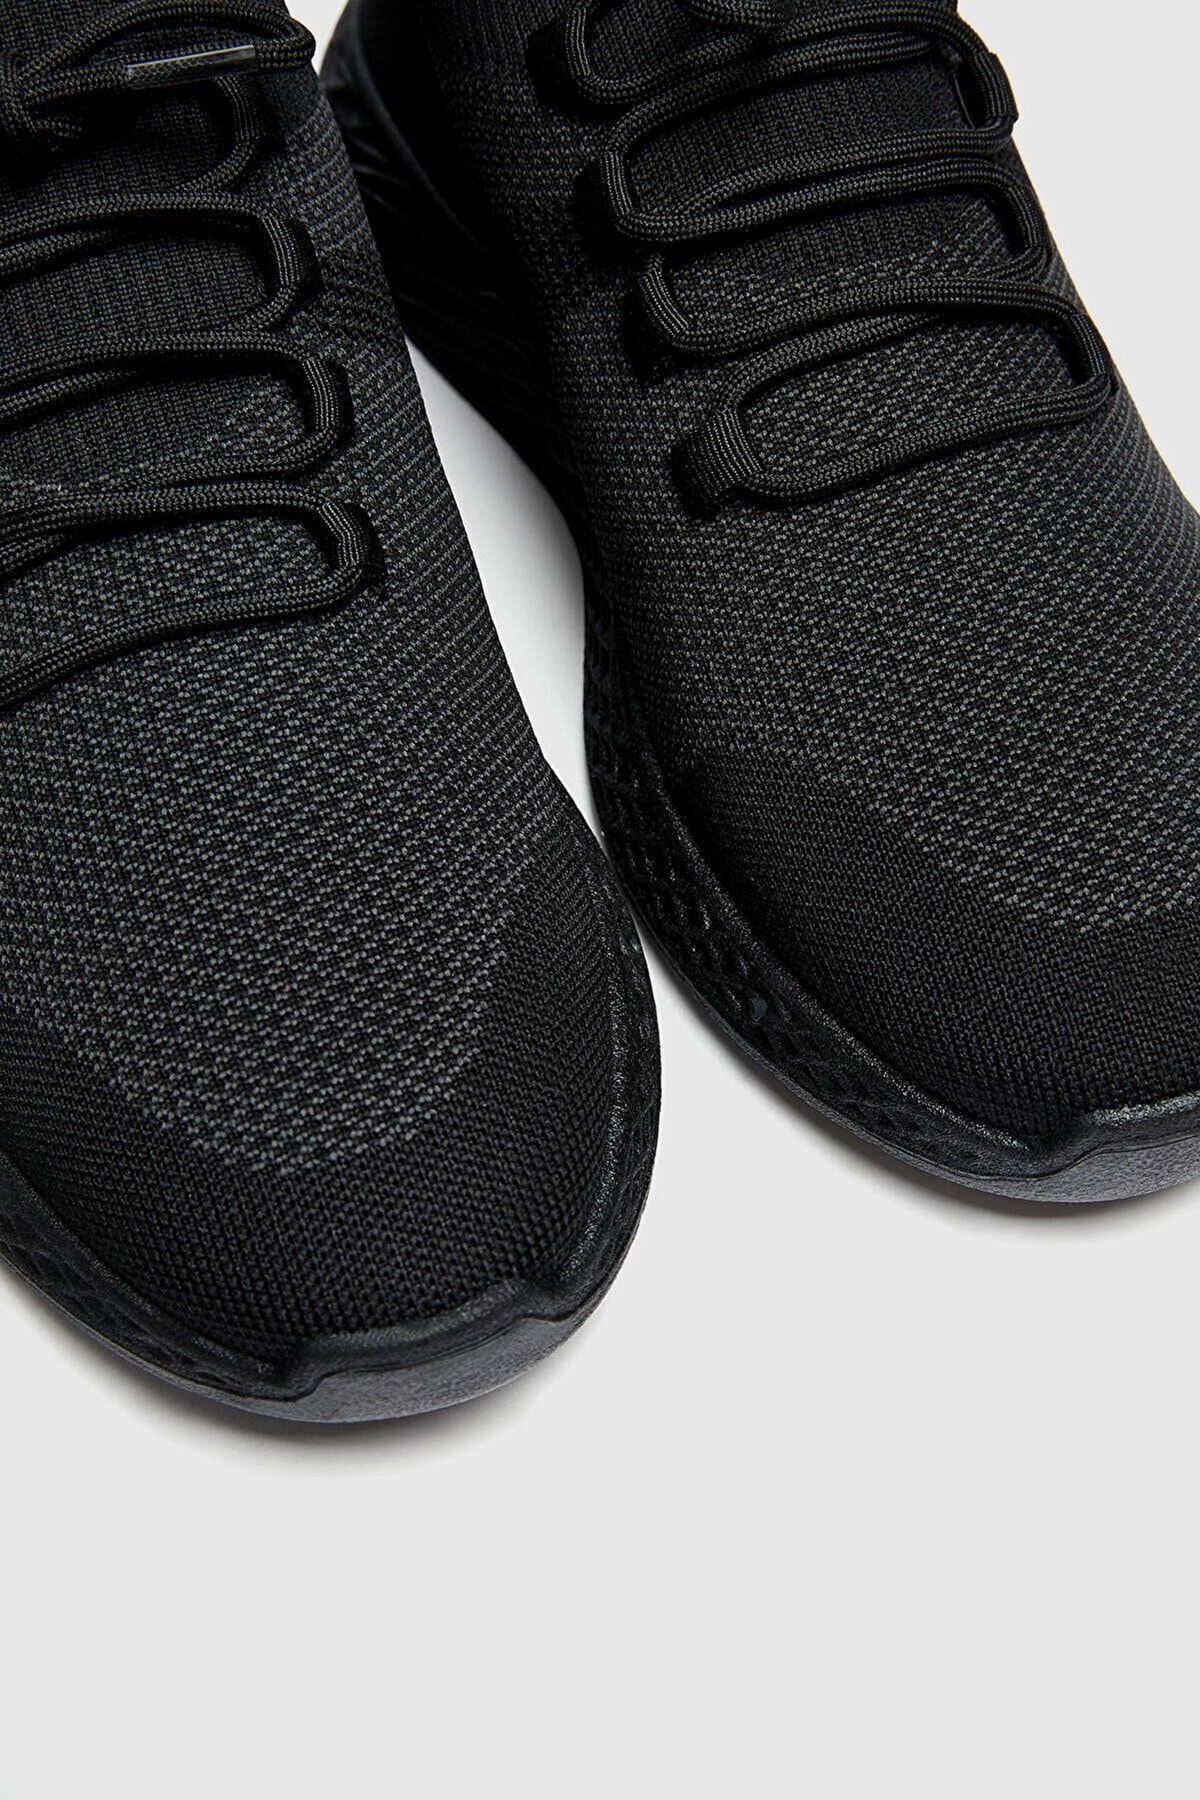 Boy Uzatan Gizli Topuklu Örgü Siyah Spor Ayakkabı MYY369